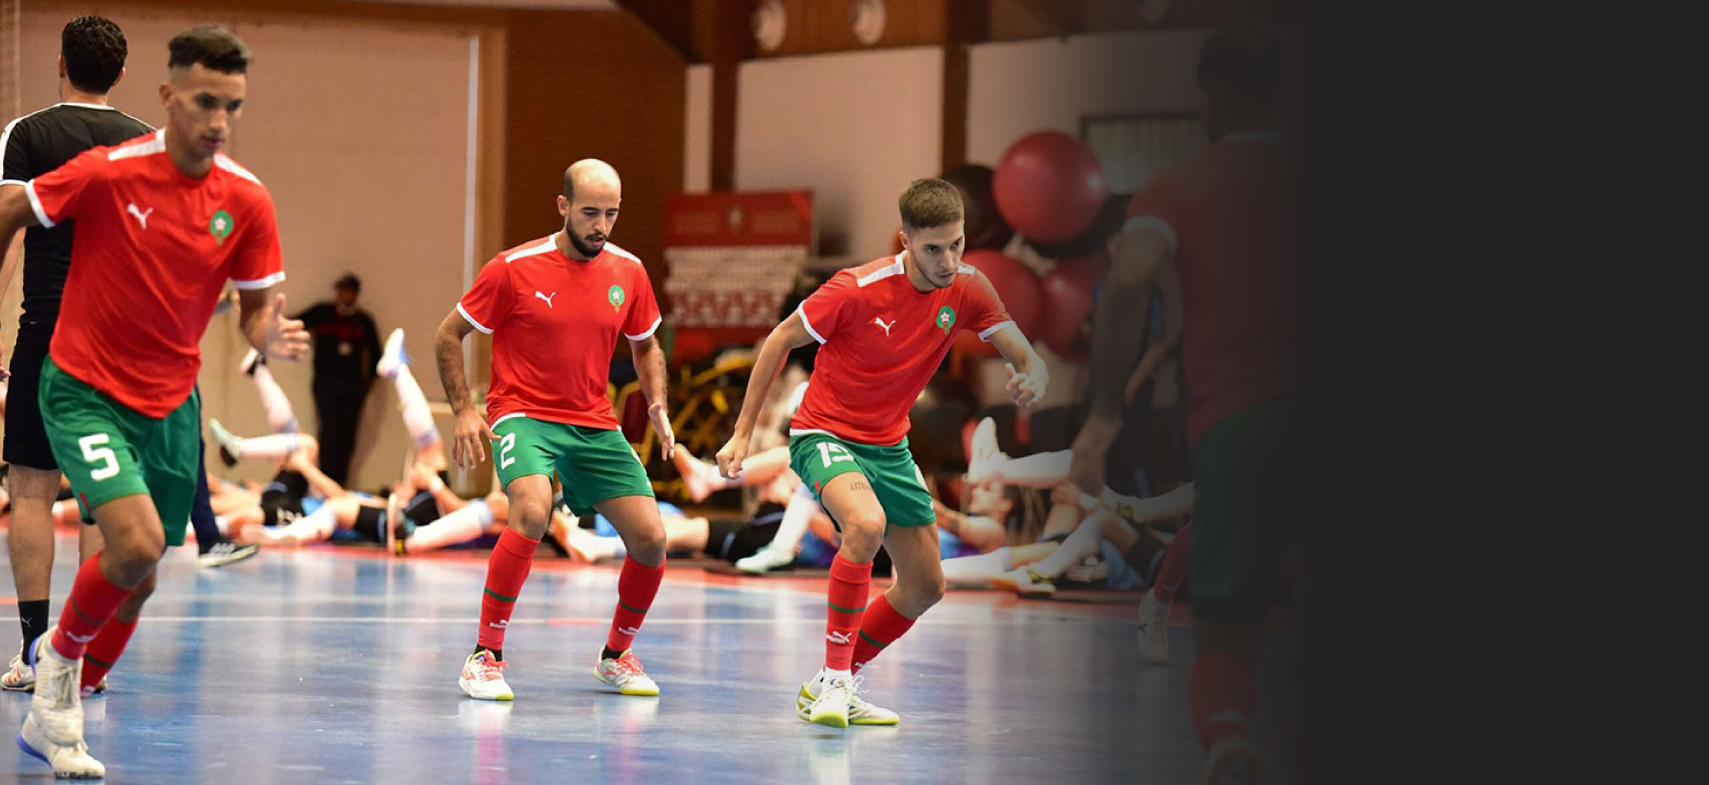 Futsal - كرة القدم داخل القاعة